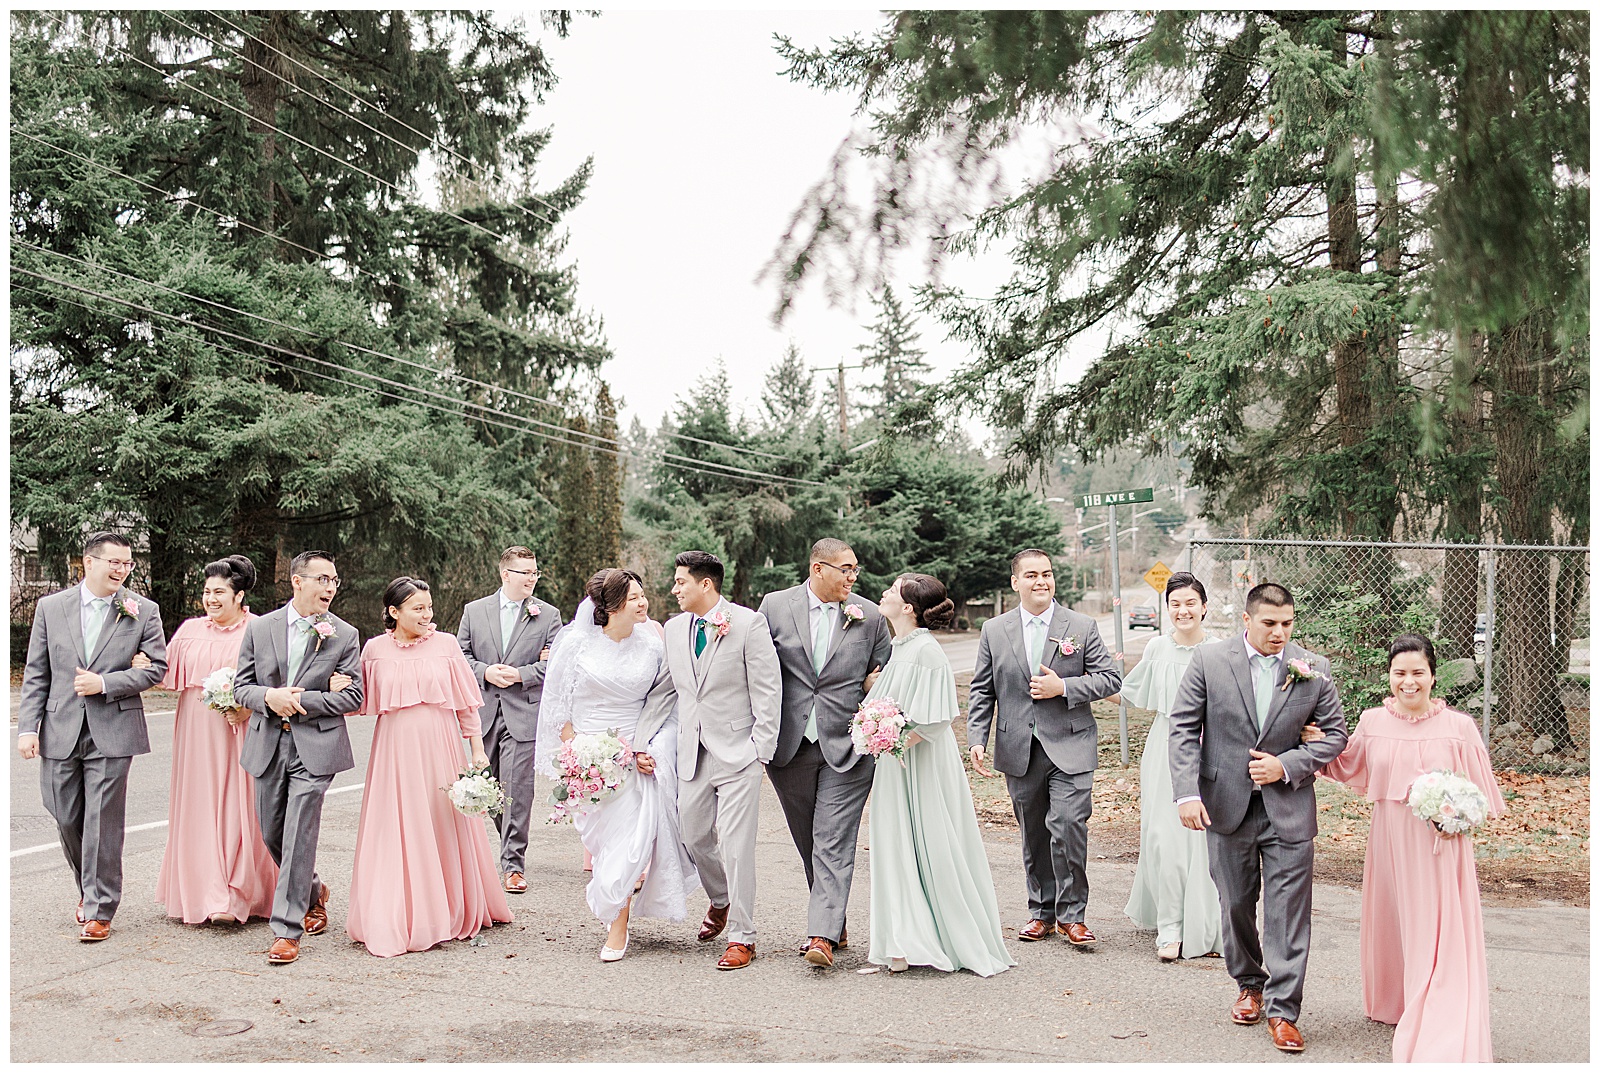 Bridal party walking shot at Apostolic Seattle wedding